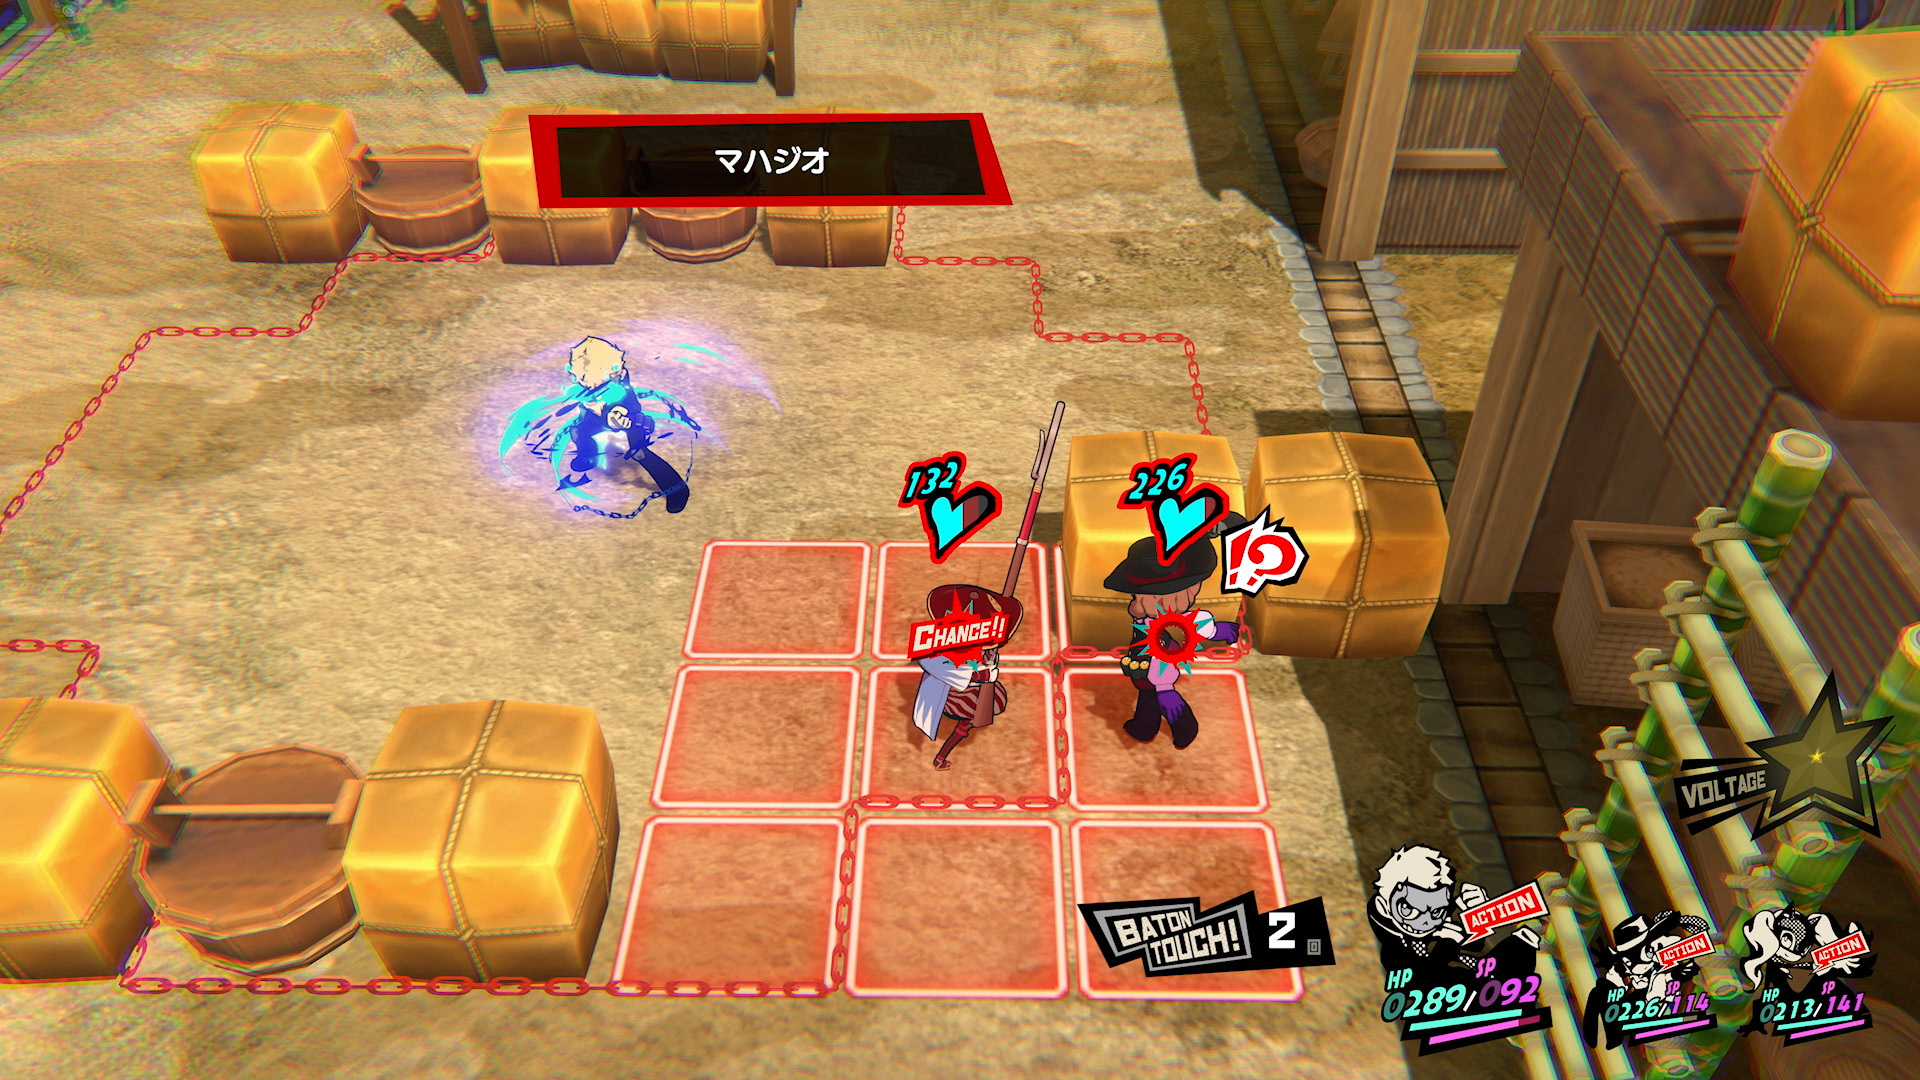 《女神异闻录 5 战略版》游玩要素介绍 敌人与关卡机关、装备等游戏资讯公开